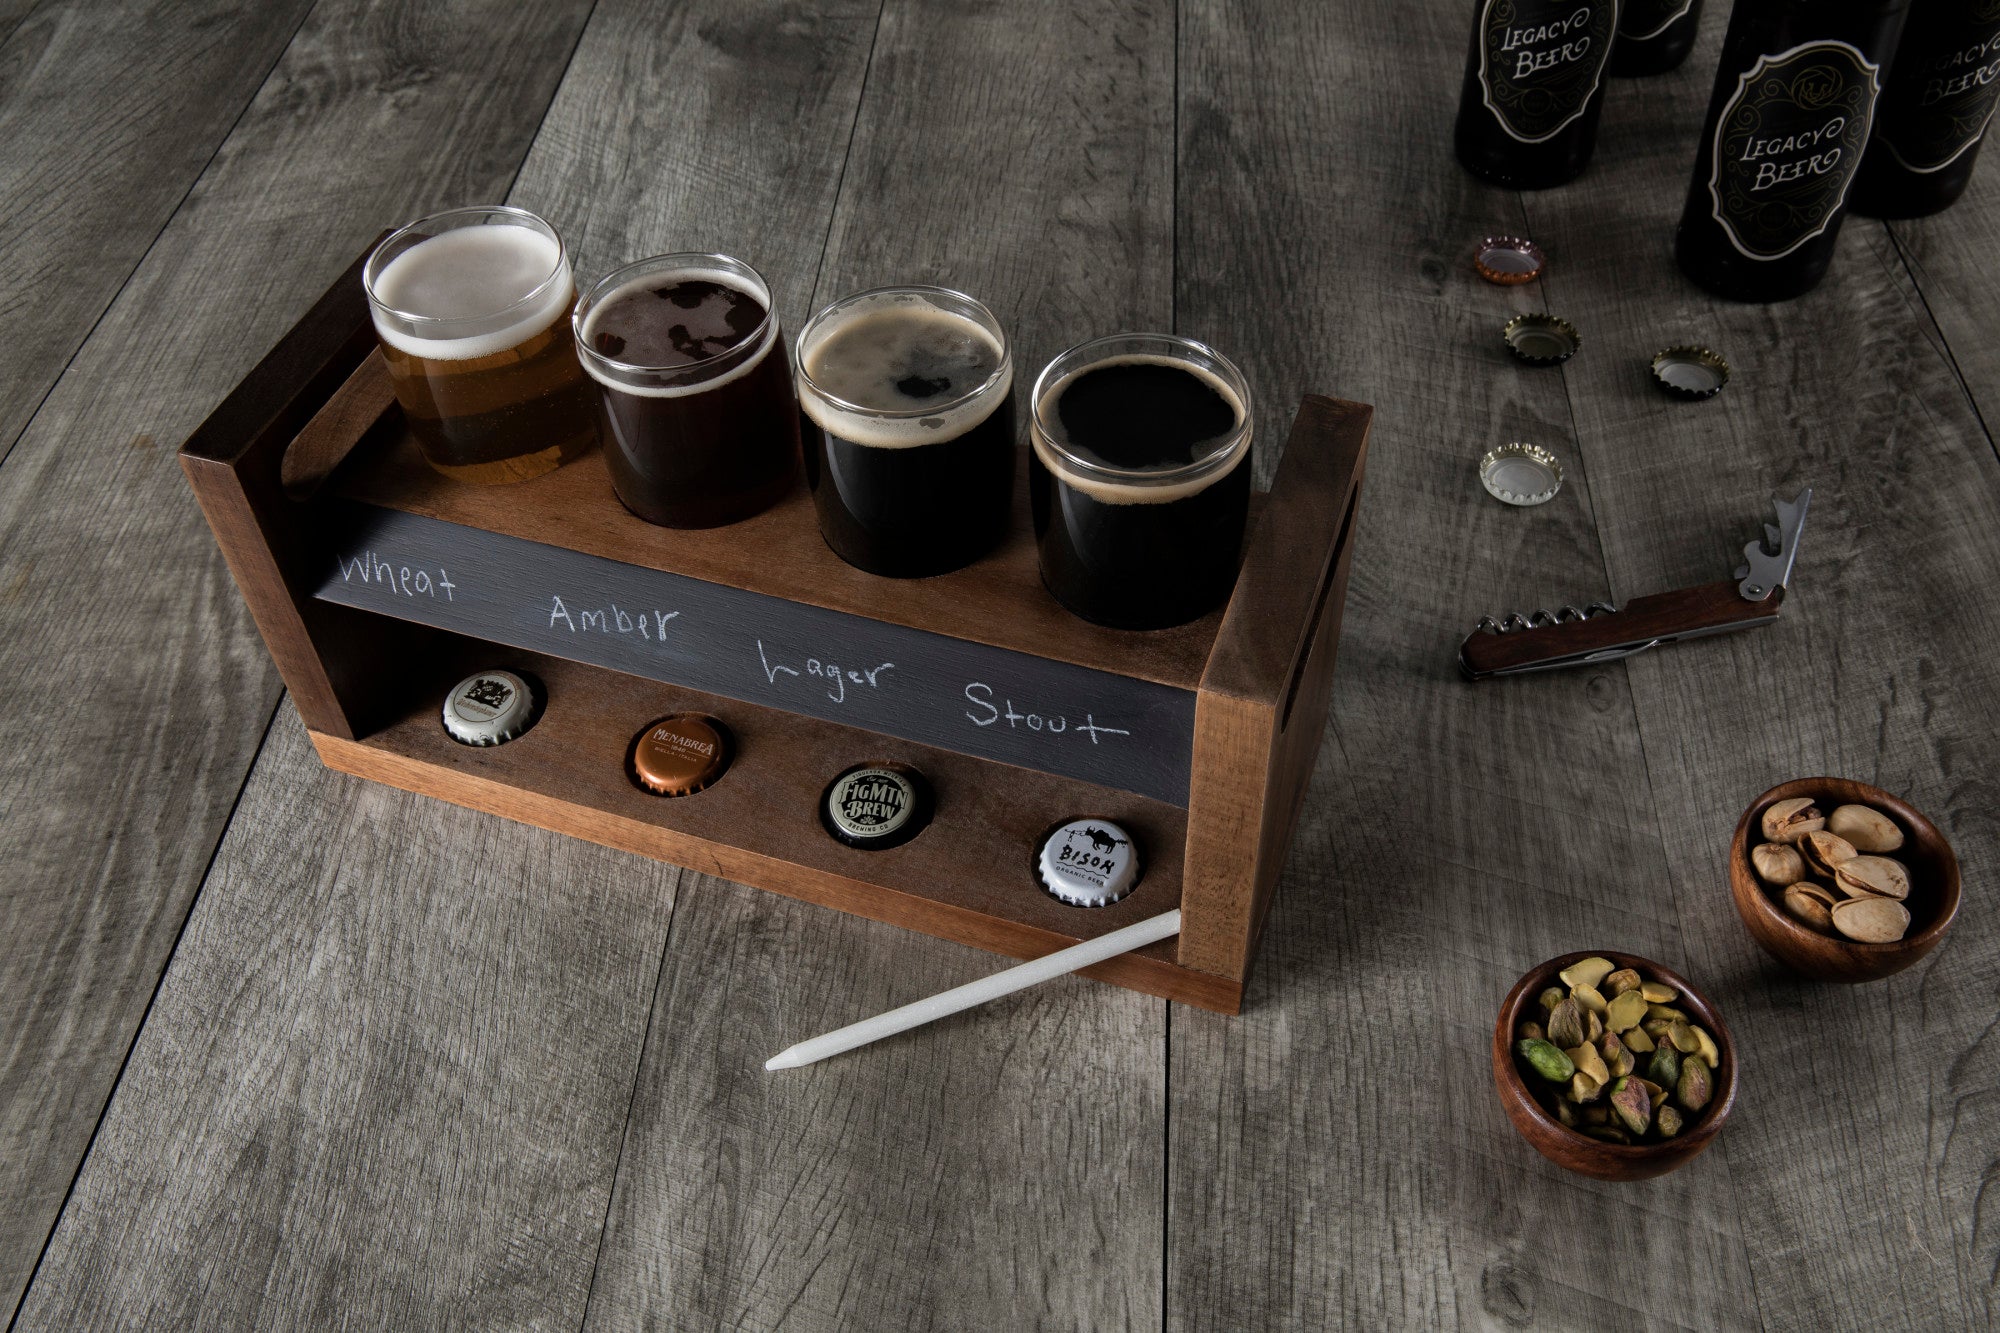 New Orleans Saints - Craft Beer Flight Beverage Sampler